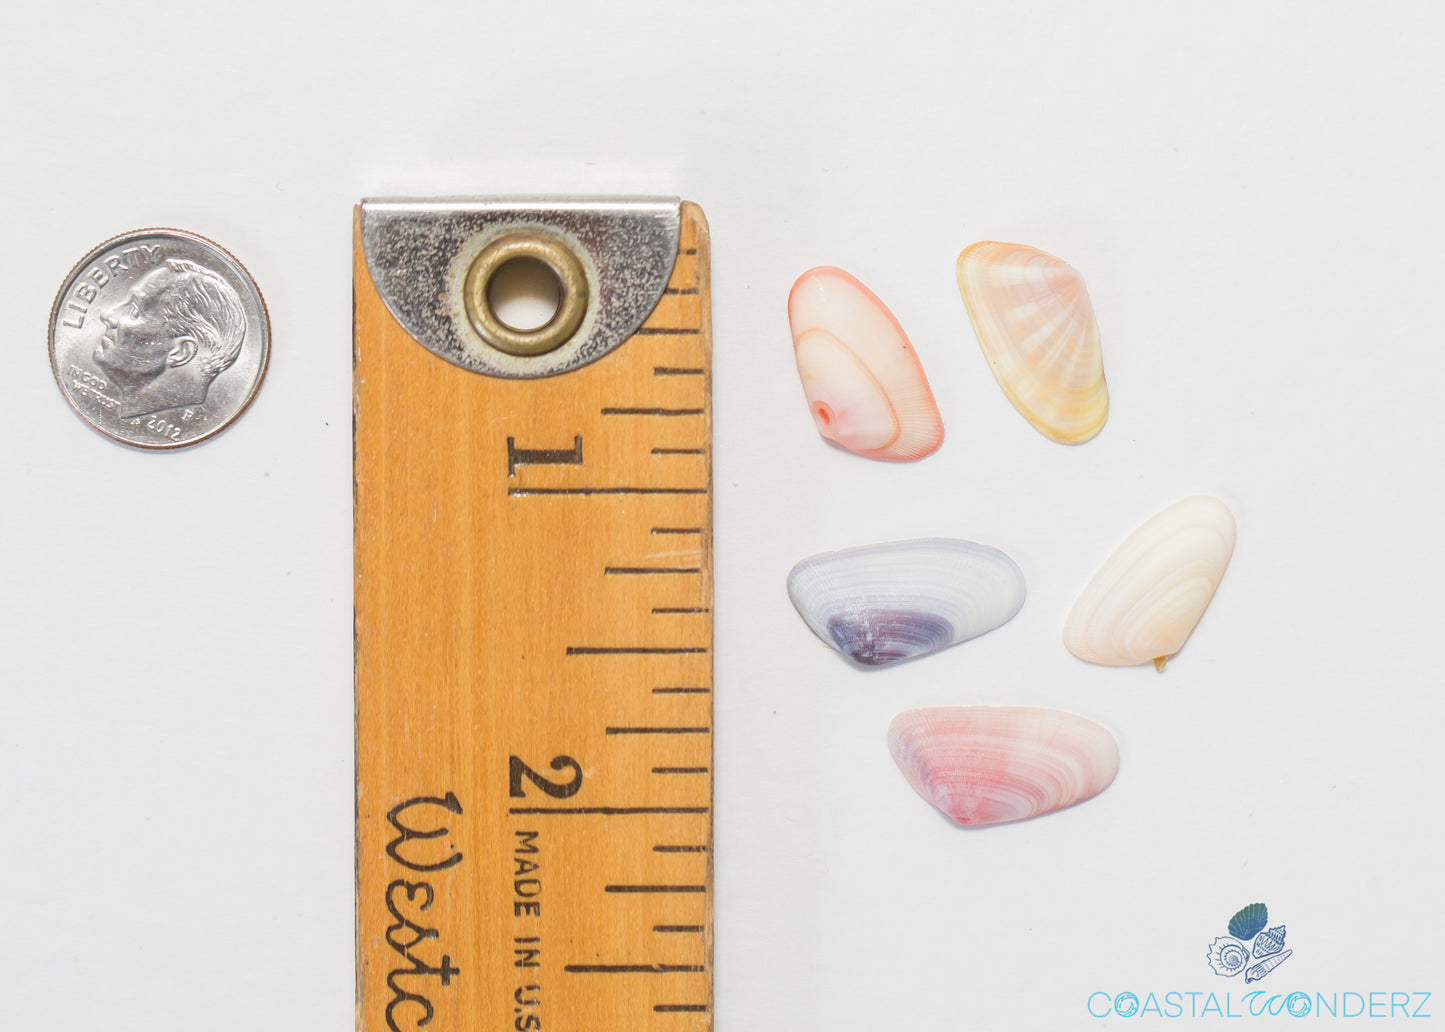 Coquina Seashells (Donax variabilis)